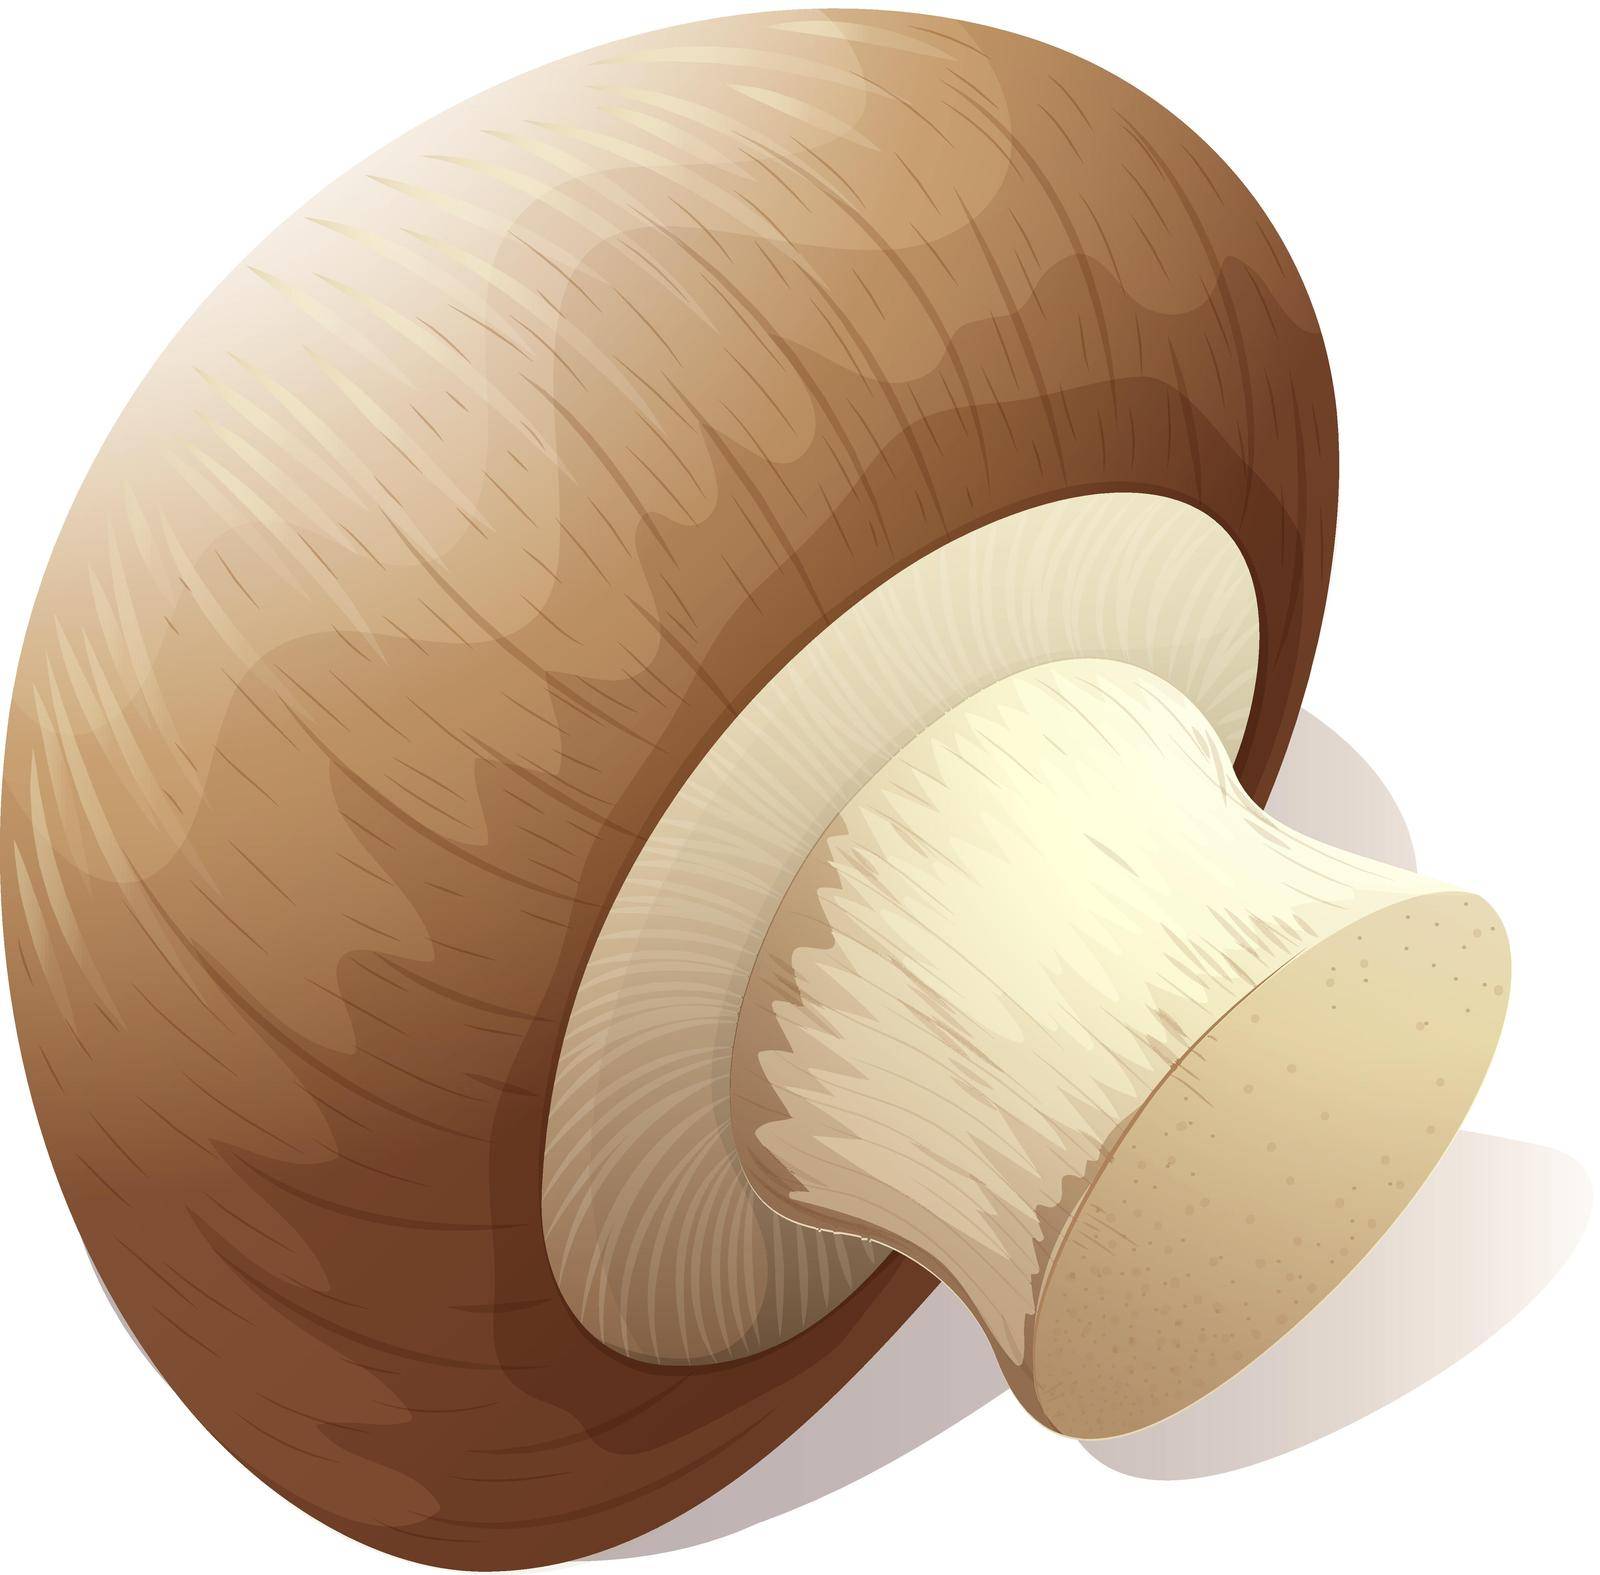 Single mushroom on white illustration